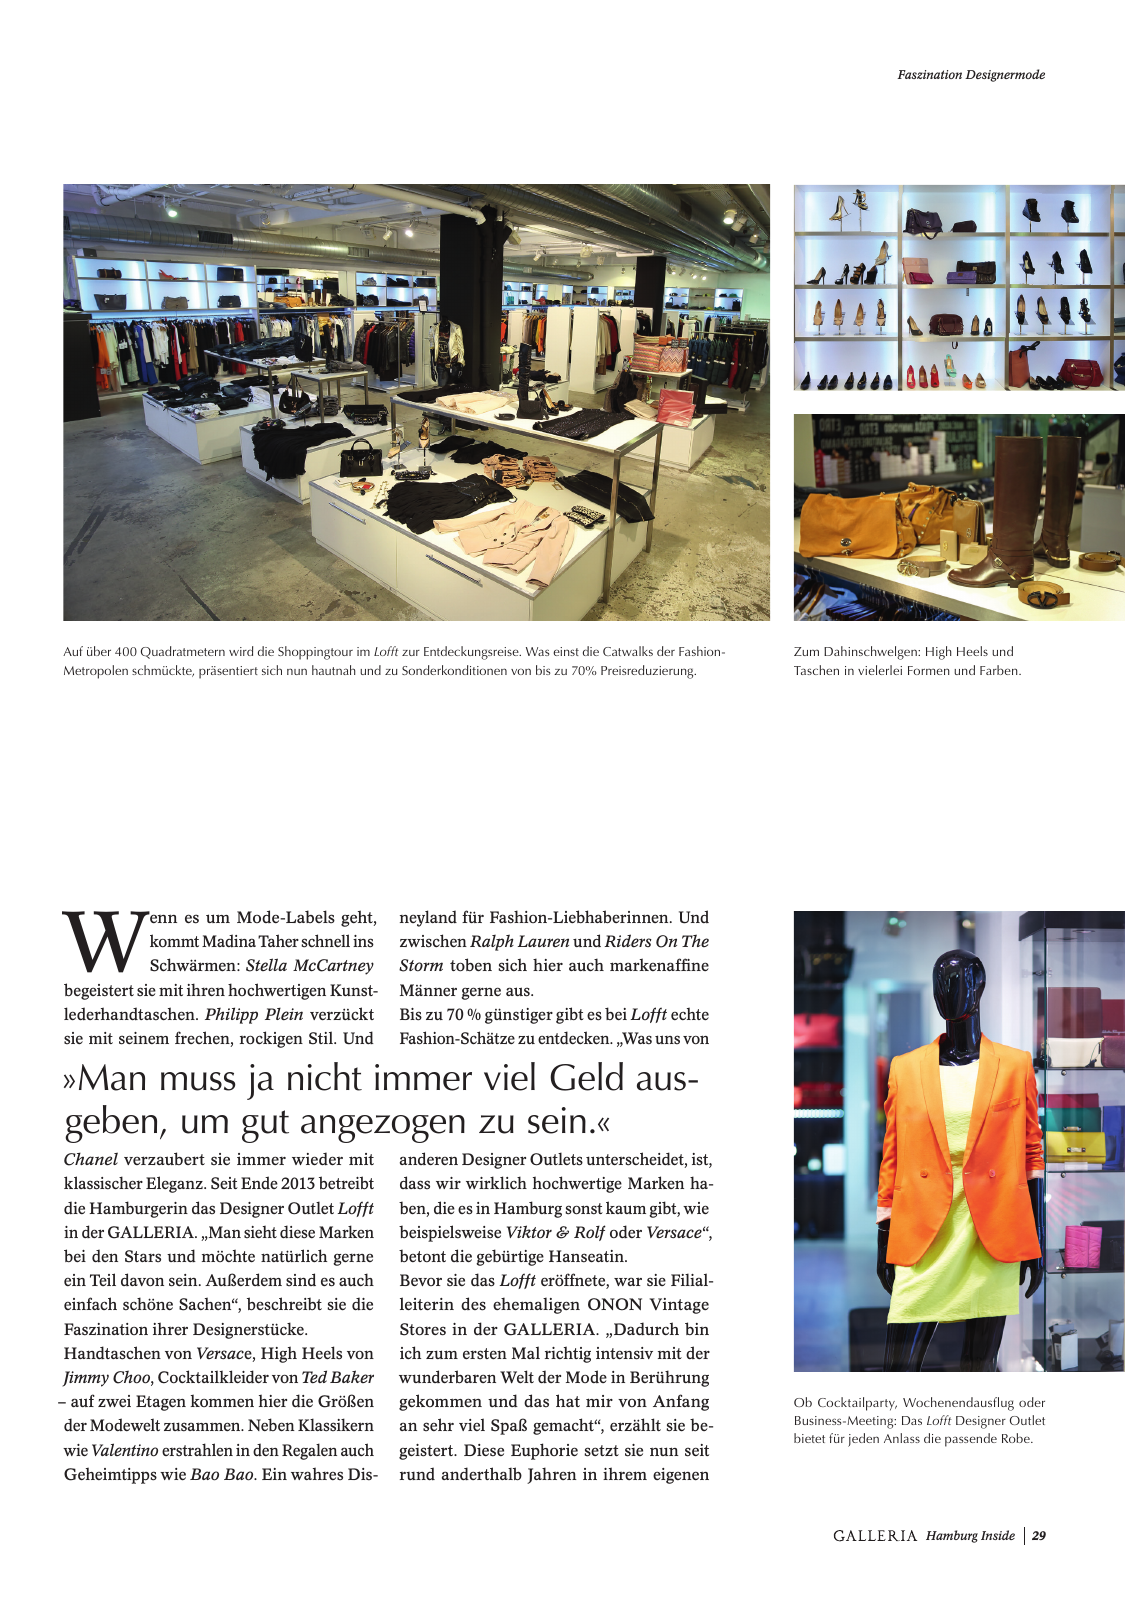 Vorschau GALLERIA Magazin Hamburg Inside 2 Seite 29